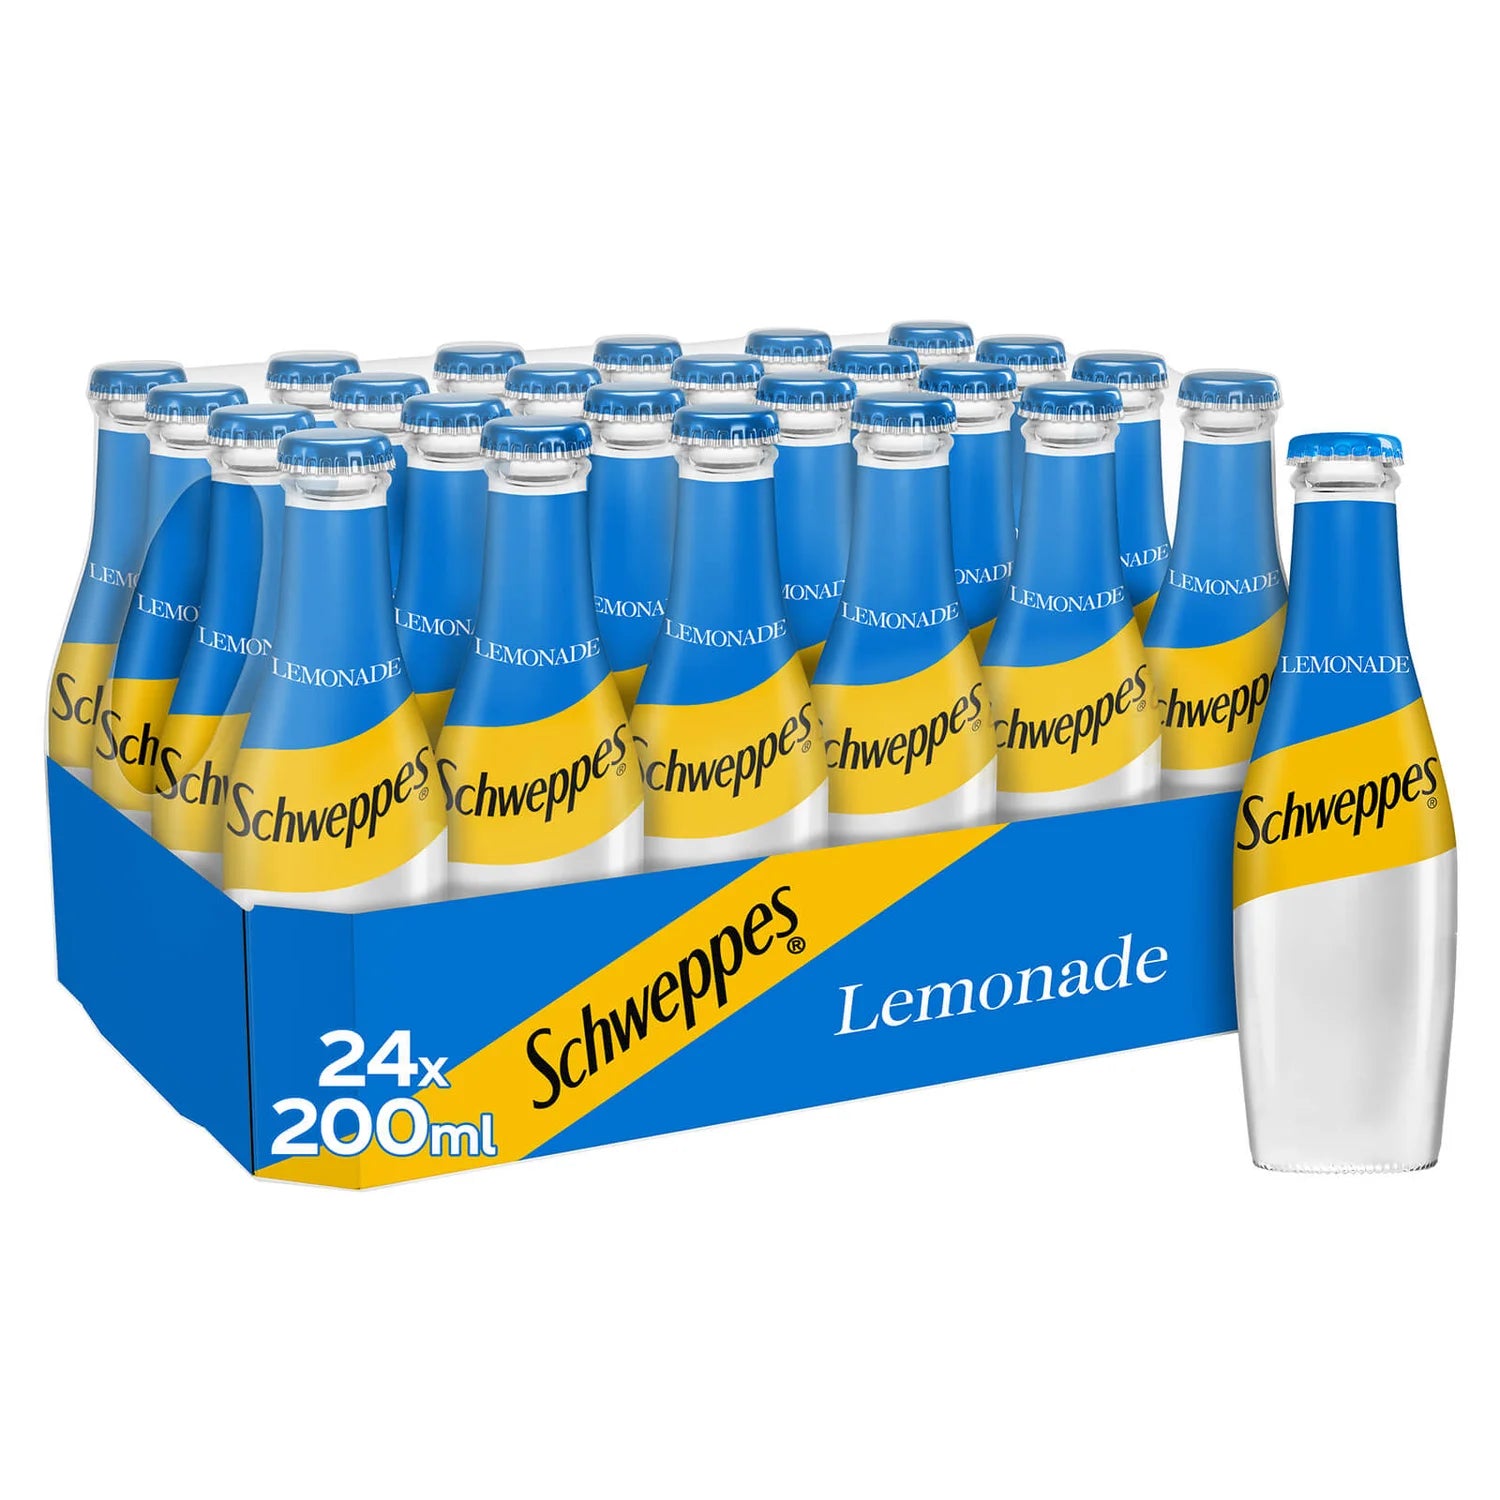 Schweppes Lemonade - 200ml - case of 24